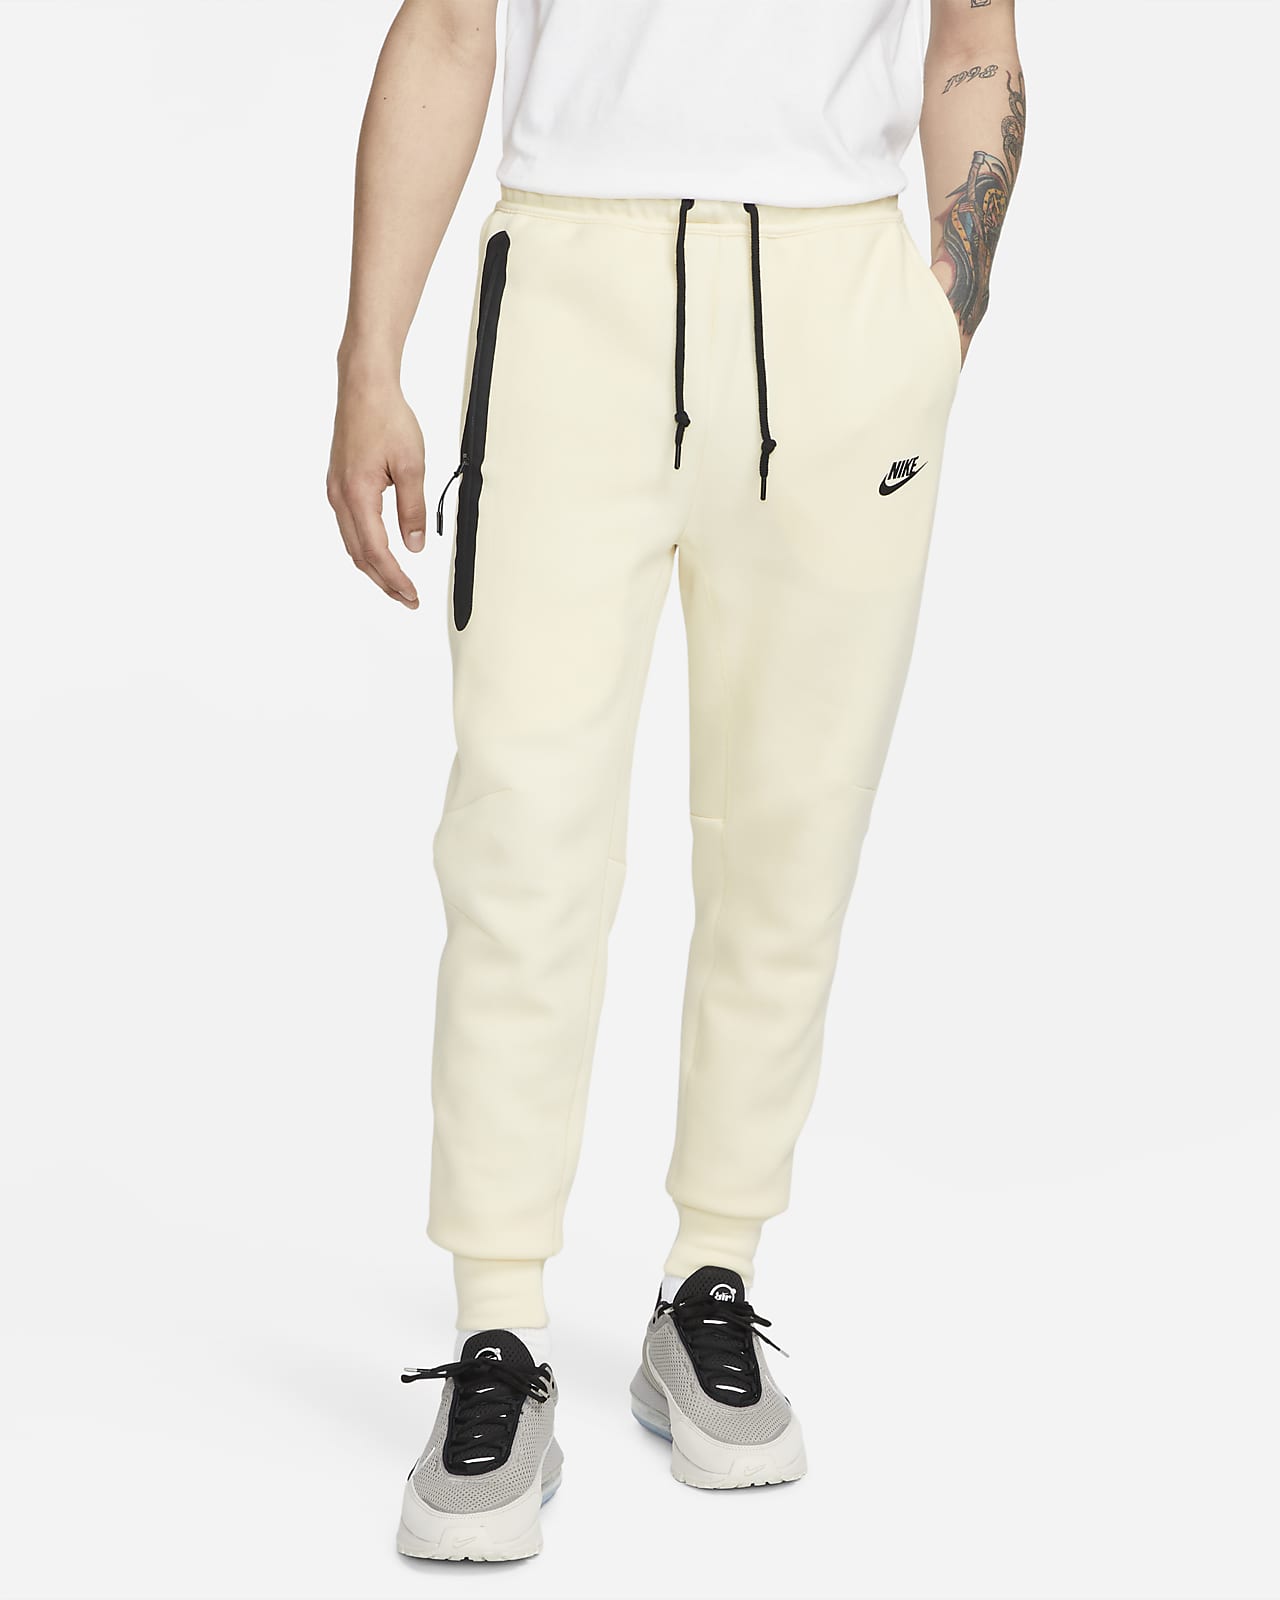 Pantalon de jogging Nike Sportswear Tech Fleece pour homme